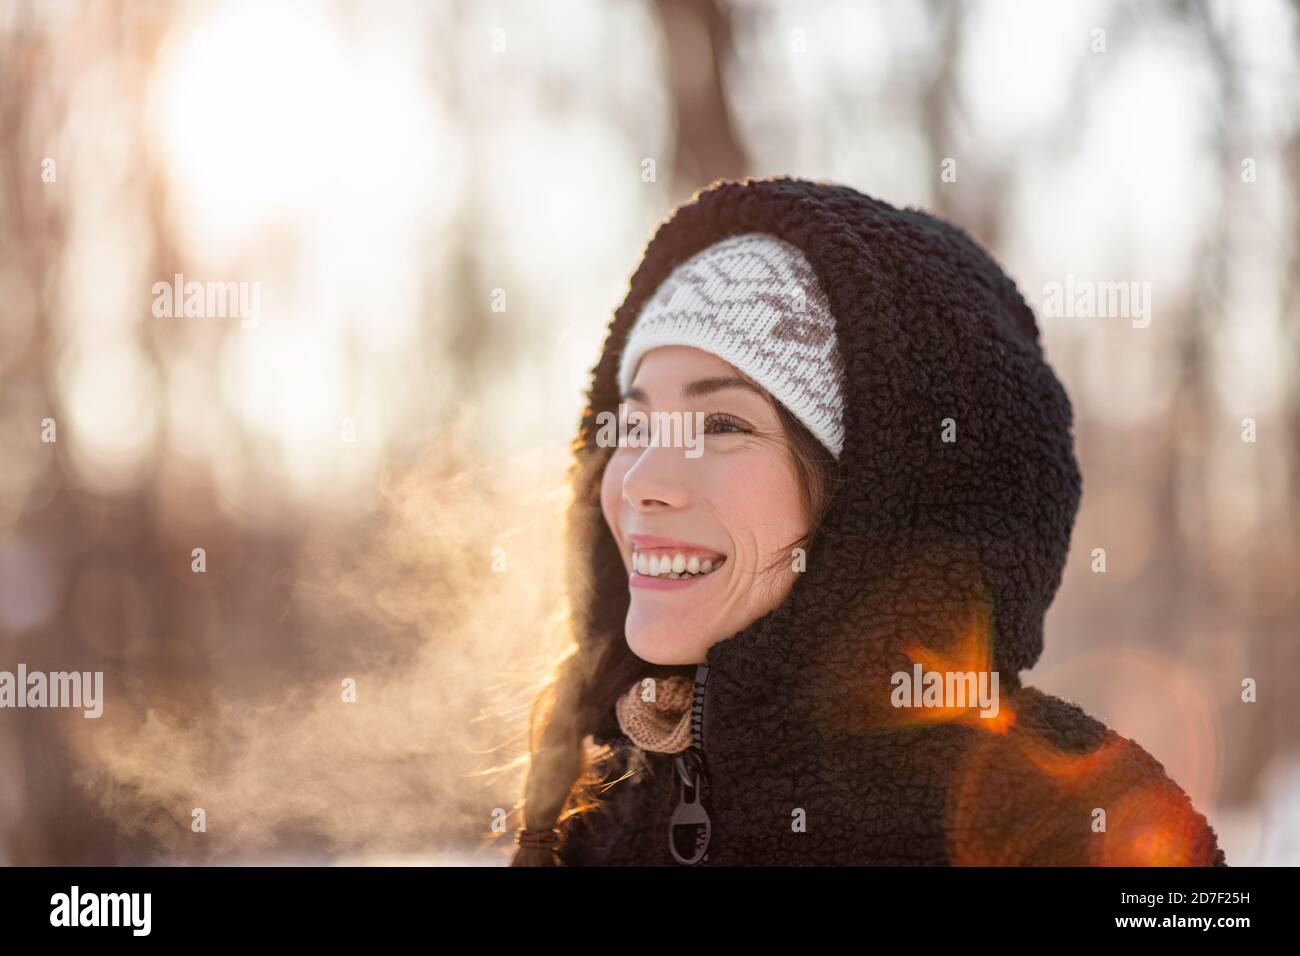 Winter kalt asiatische Frau atmen in der kalten Luft mit tau Nebel Wolken gegen Sonnenlicht im Wald Natur Spaziergang Outdoor-Lifestyle. Happy People Lifestyle Stockfoto